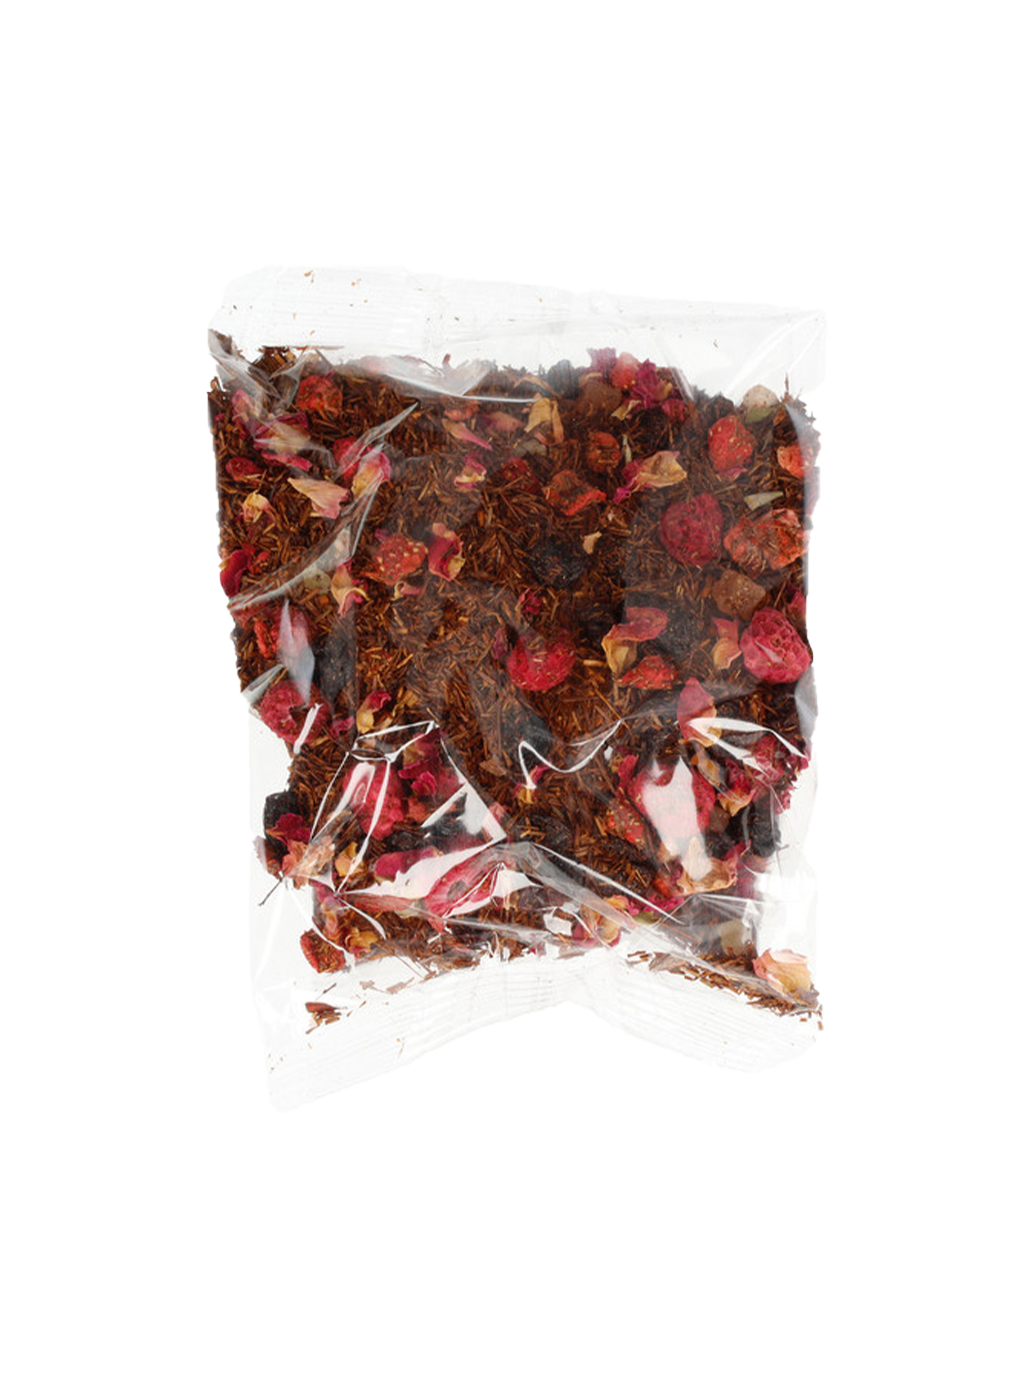 Moomin Rooibos Red Berries loose tea